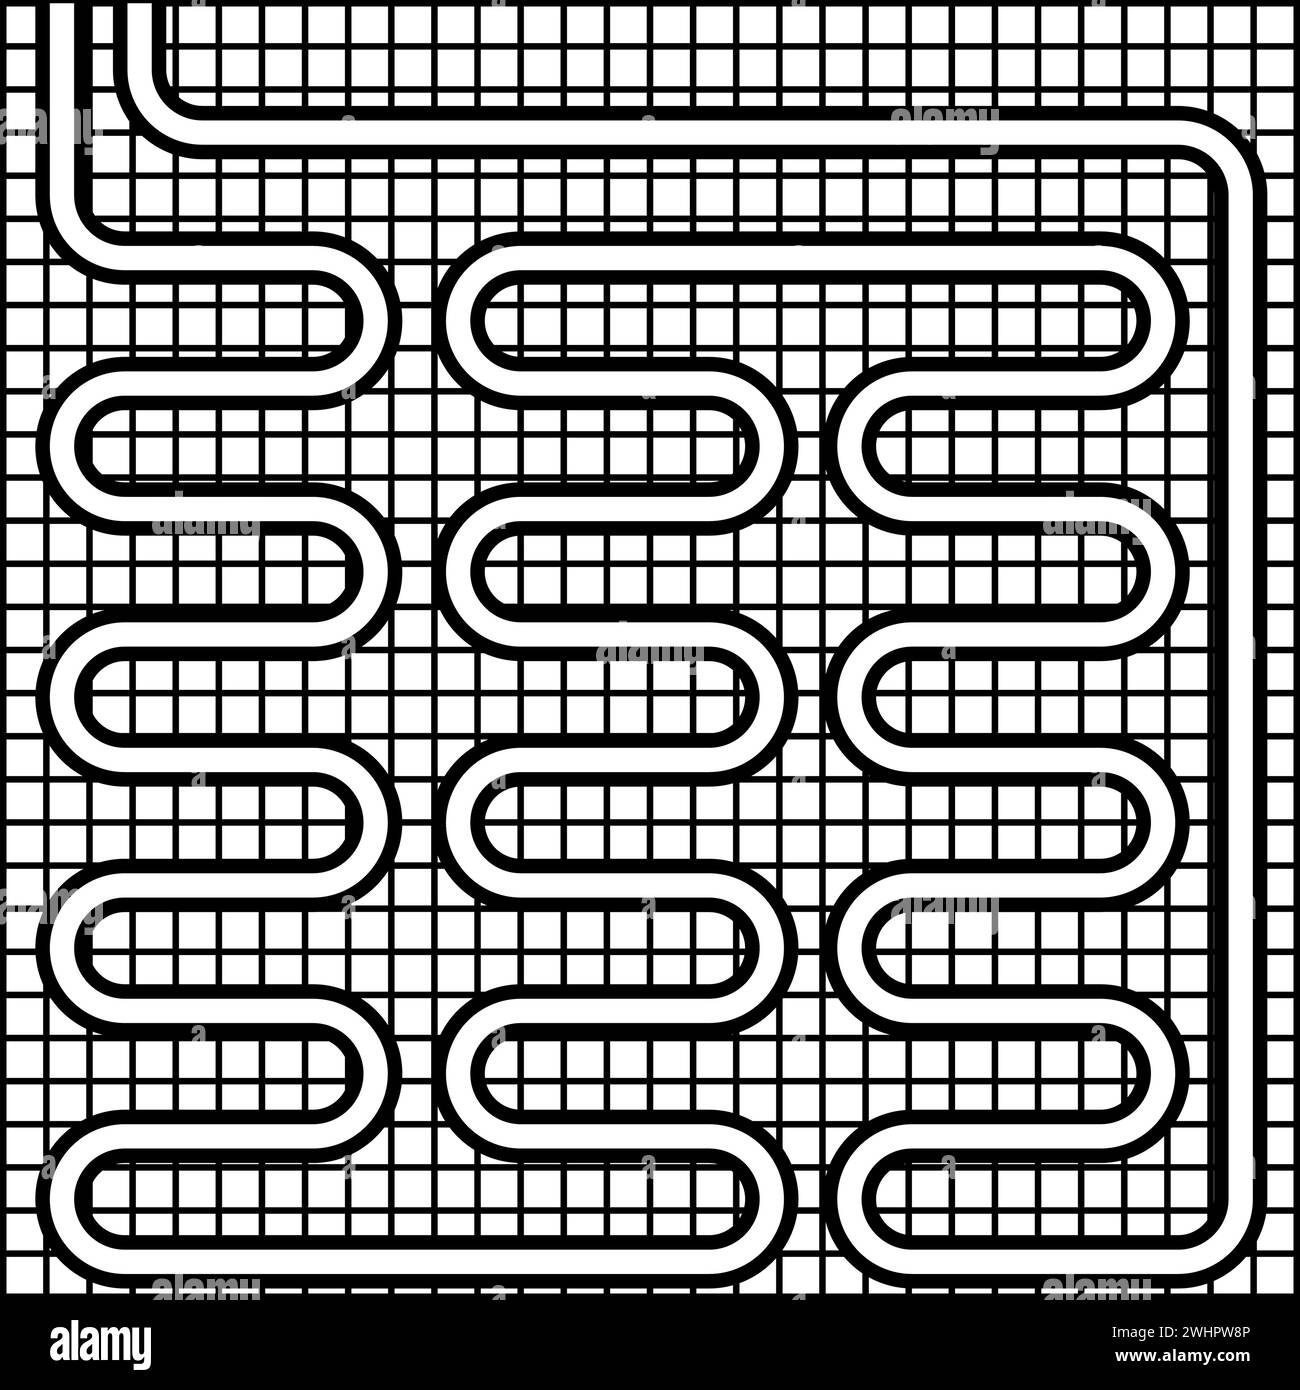 Elektrische Fußbodenheizung warm beheizt Kontur Umrisslinie Symbol schwarz Farbe Vektor Illustration Bild dünn flach Stil einfach Stock Vektor